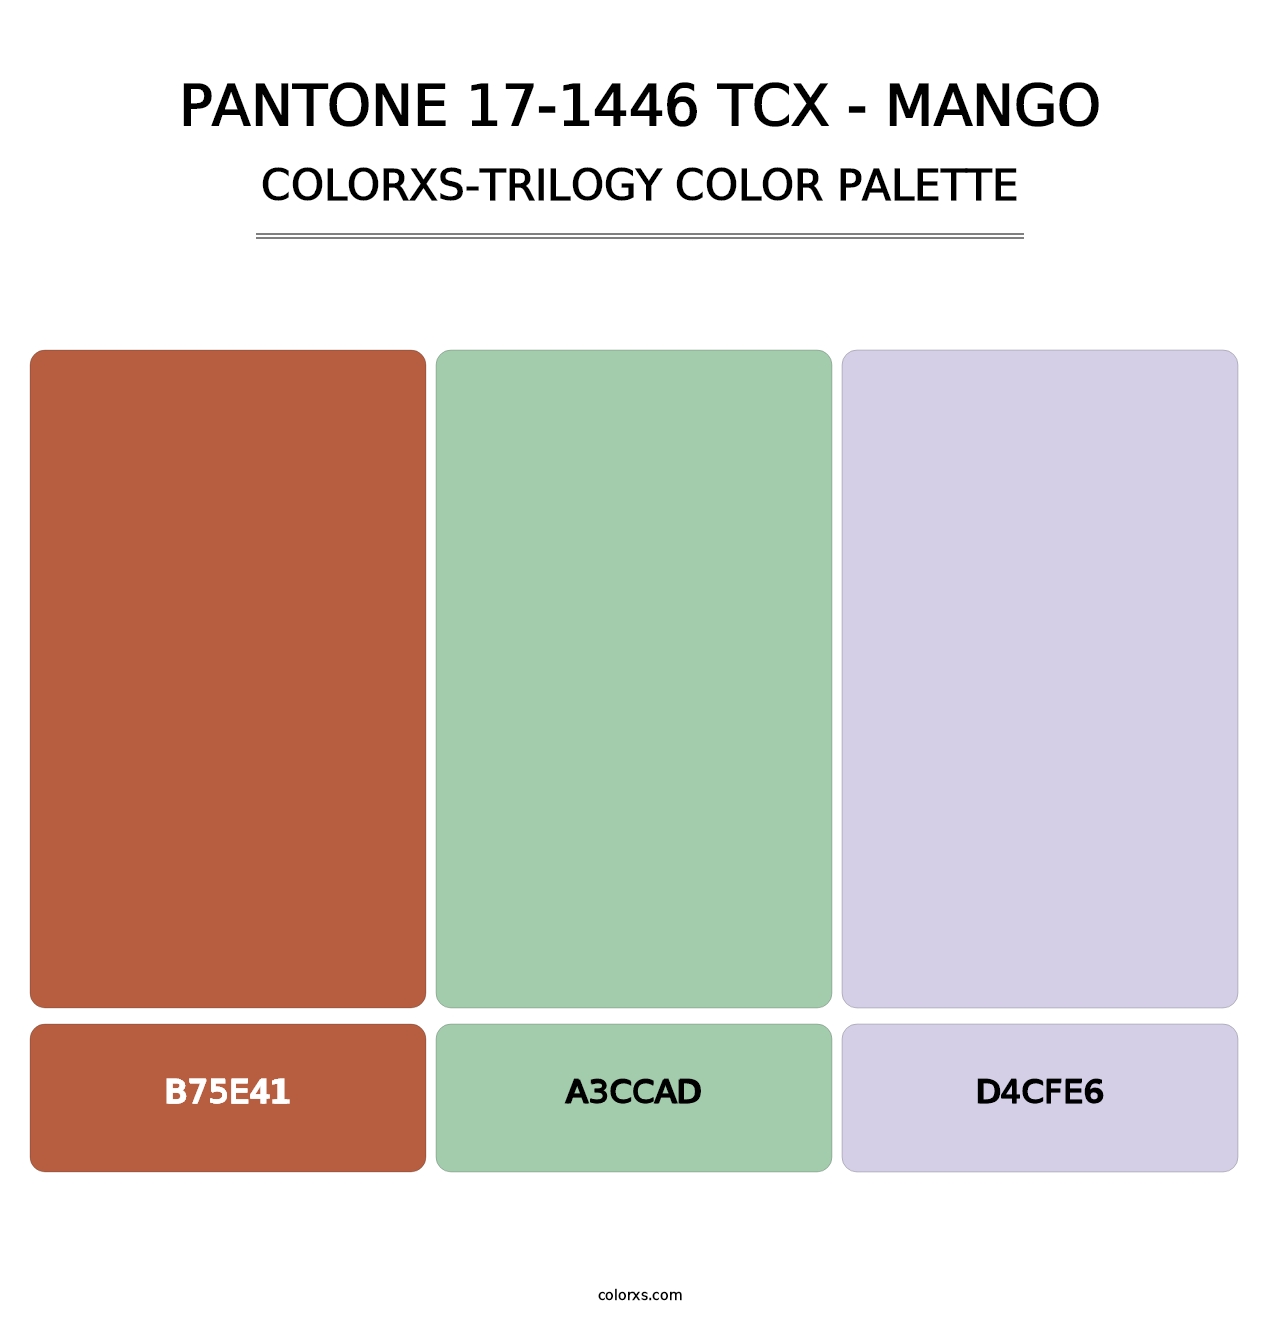 PANTONE 17-1446 TCX - Mango - Colorxs Trilogy Palette